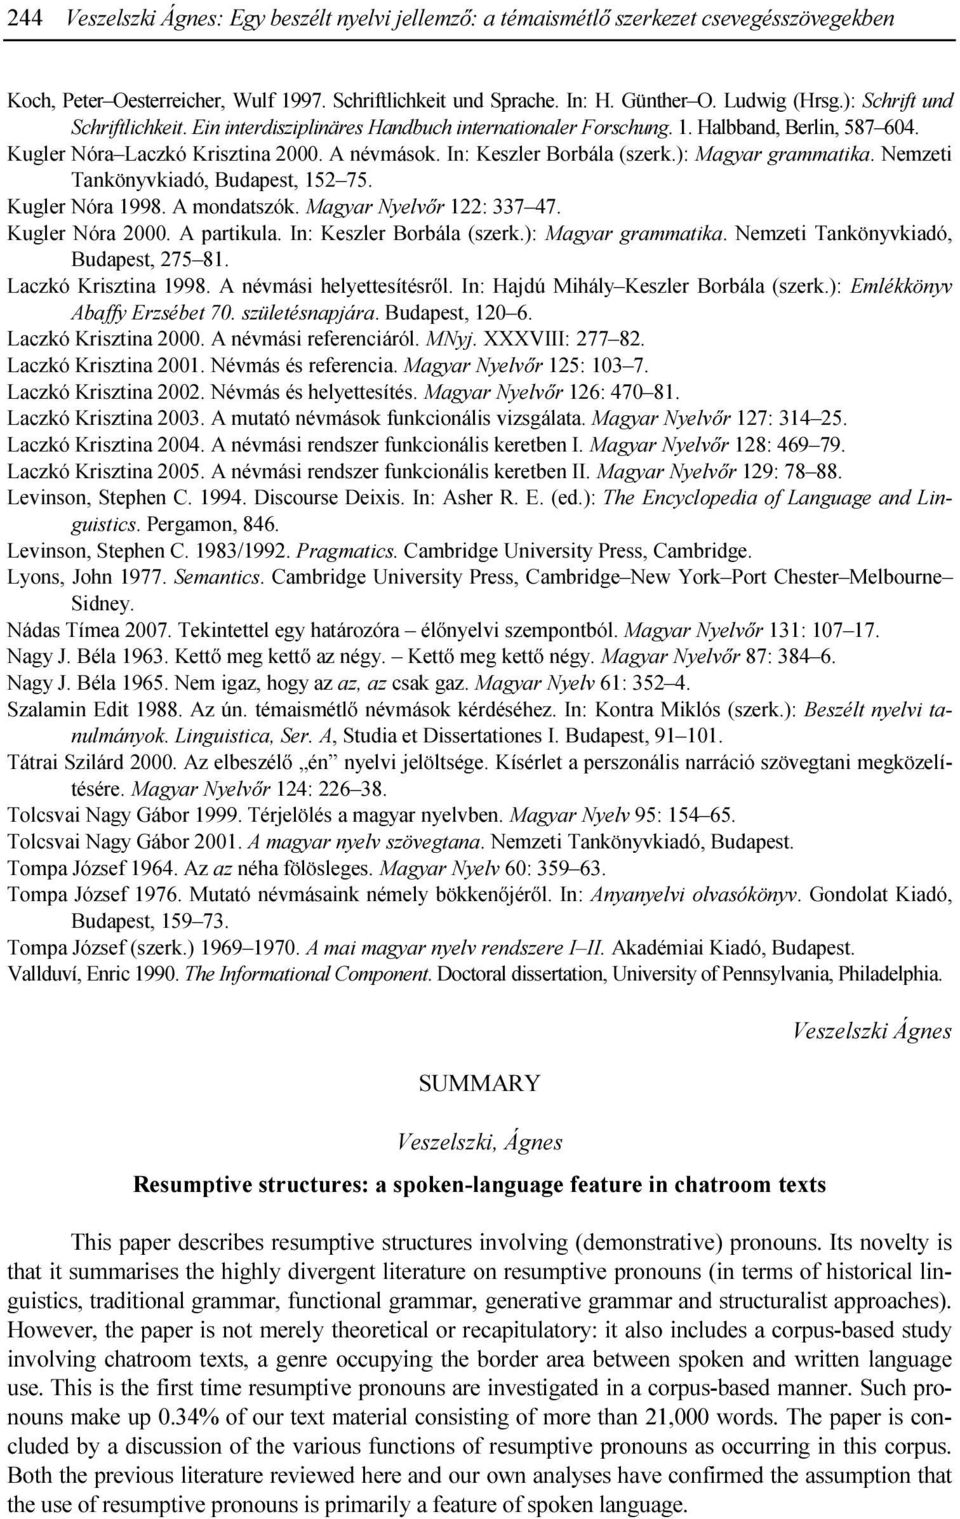 ): Magyar grammatika. Nemzeti Tankönyvkiadó, Budapest, 152 75. Kugler Nóra 1998. A mondatszók. Magyar Nyelvır 122: 337 47. Kugler Nóra 2000. A partikula. In: Keszler Borbála (szerk.